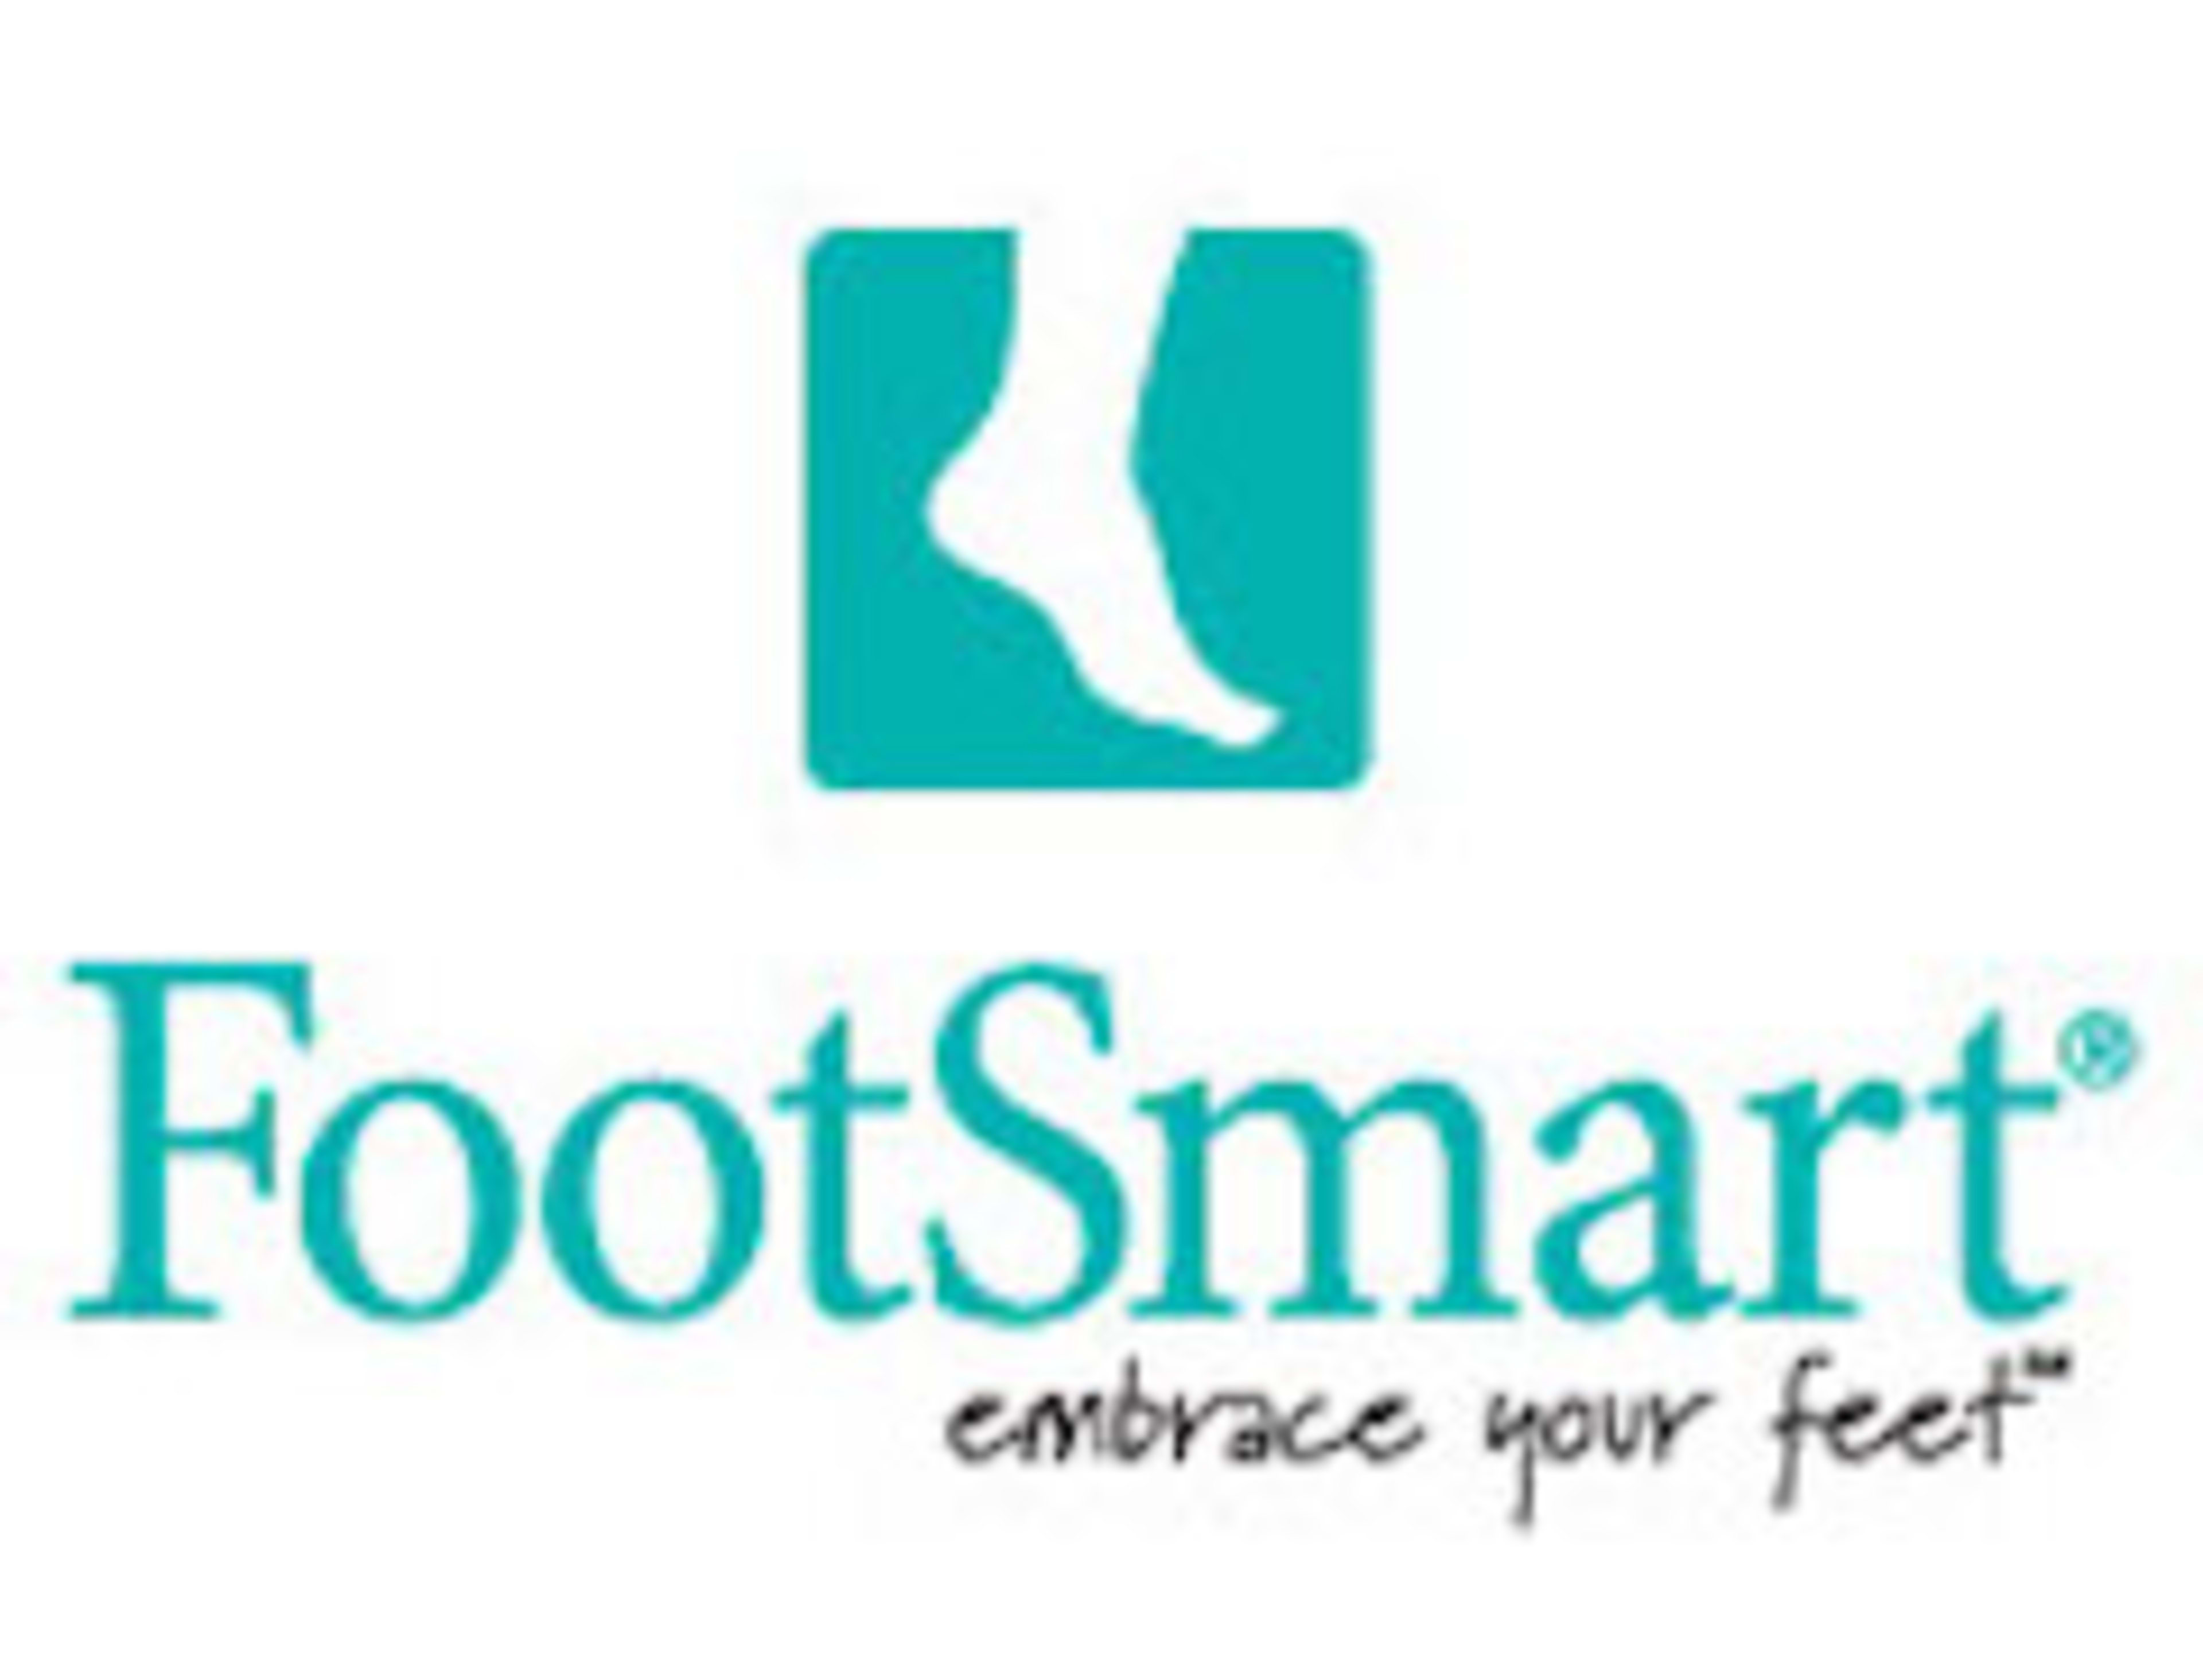 FootSmart Code